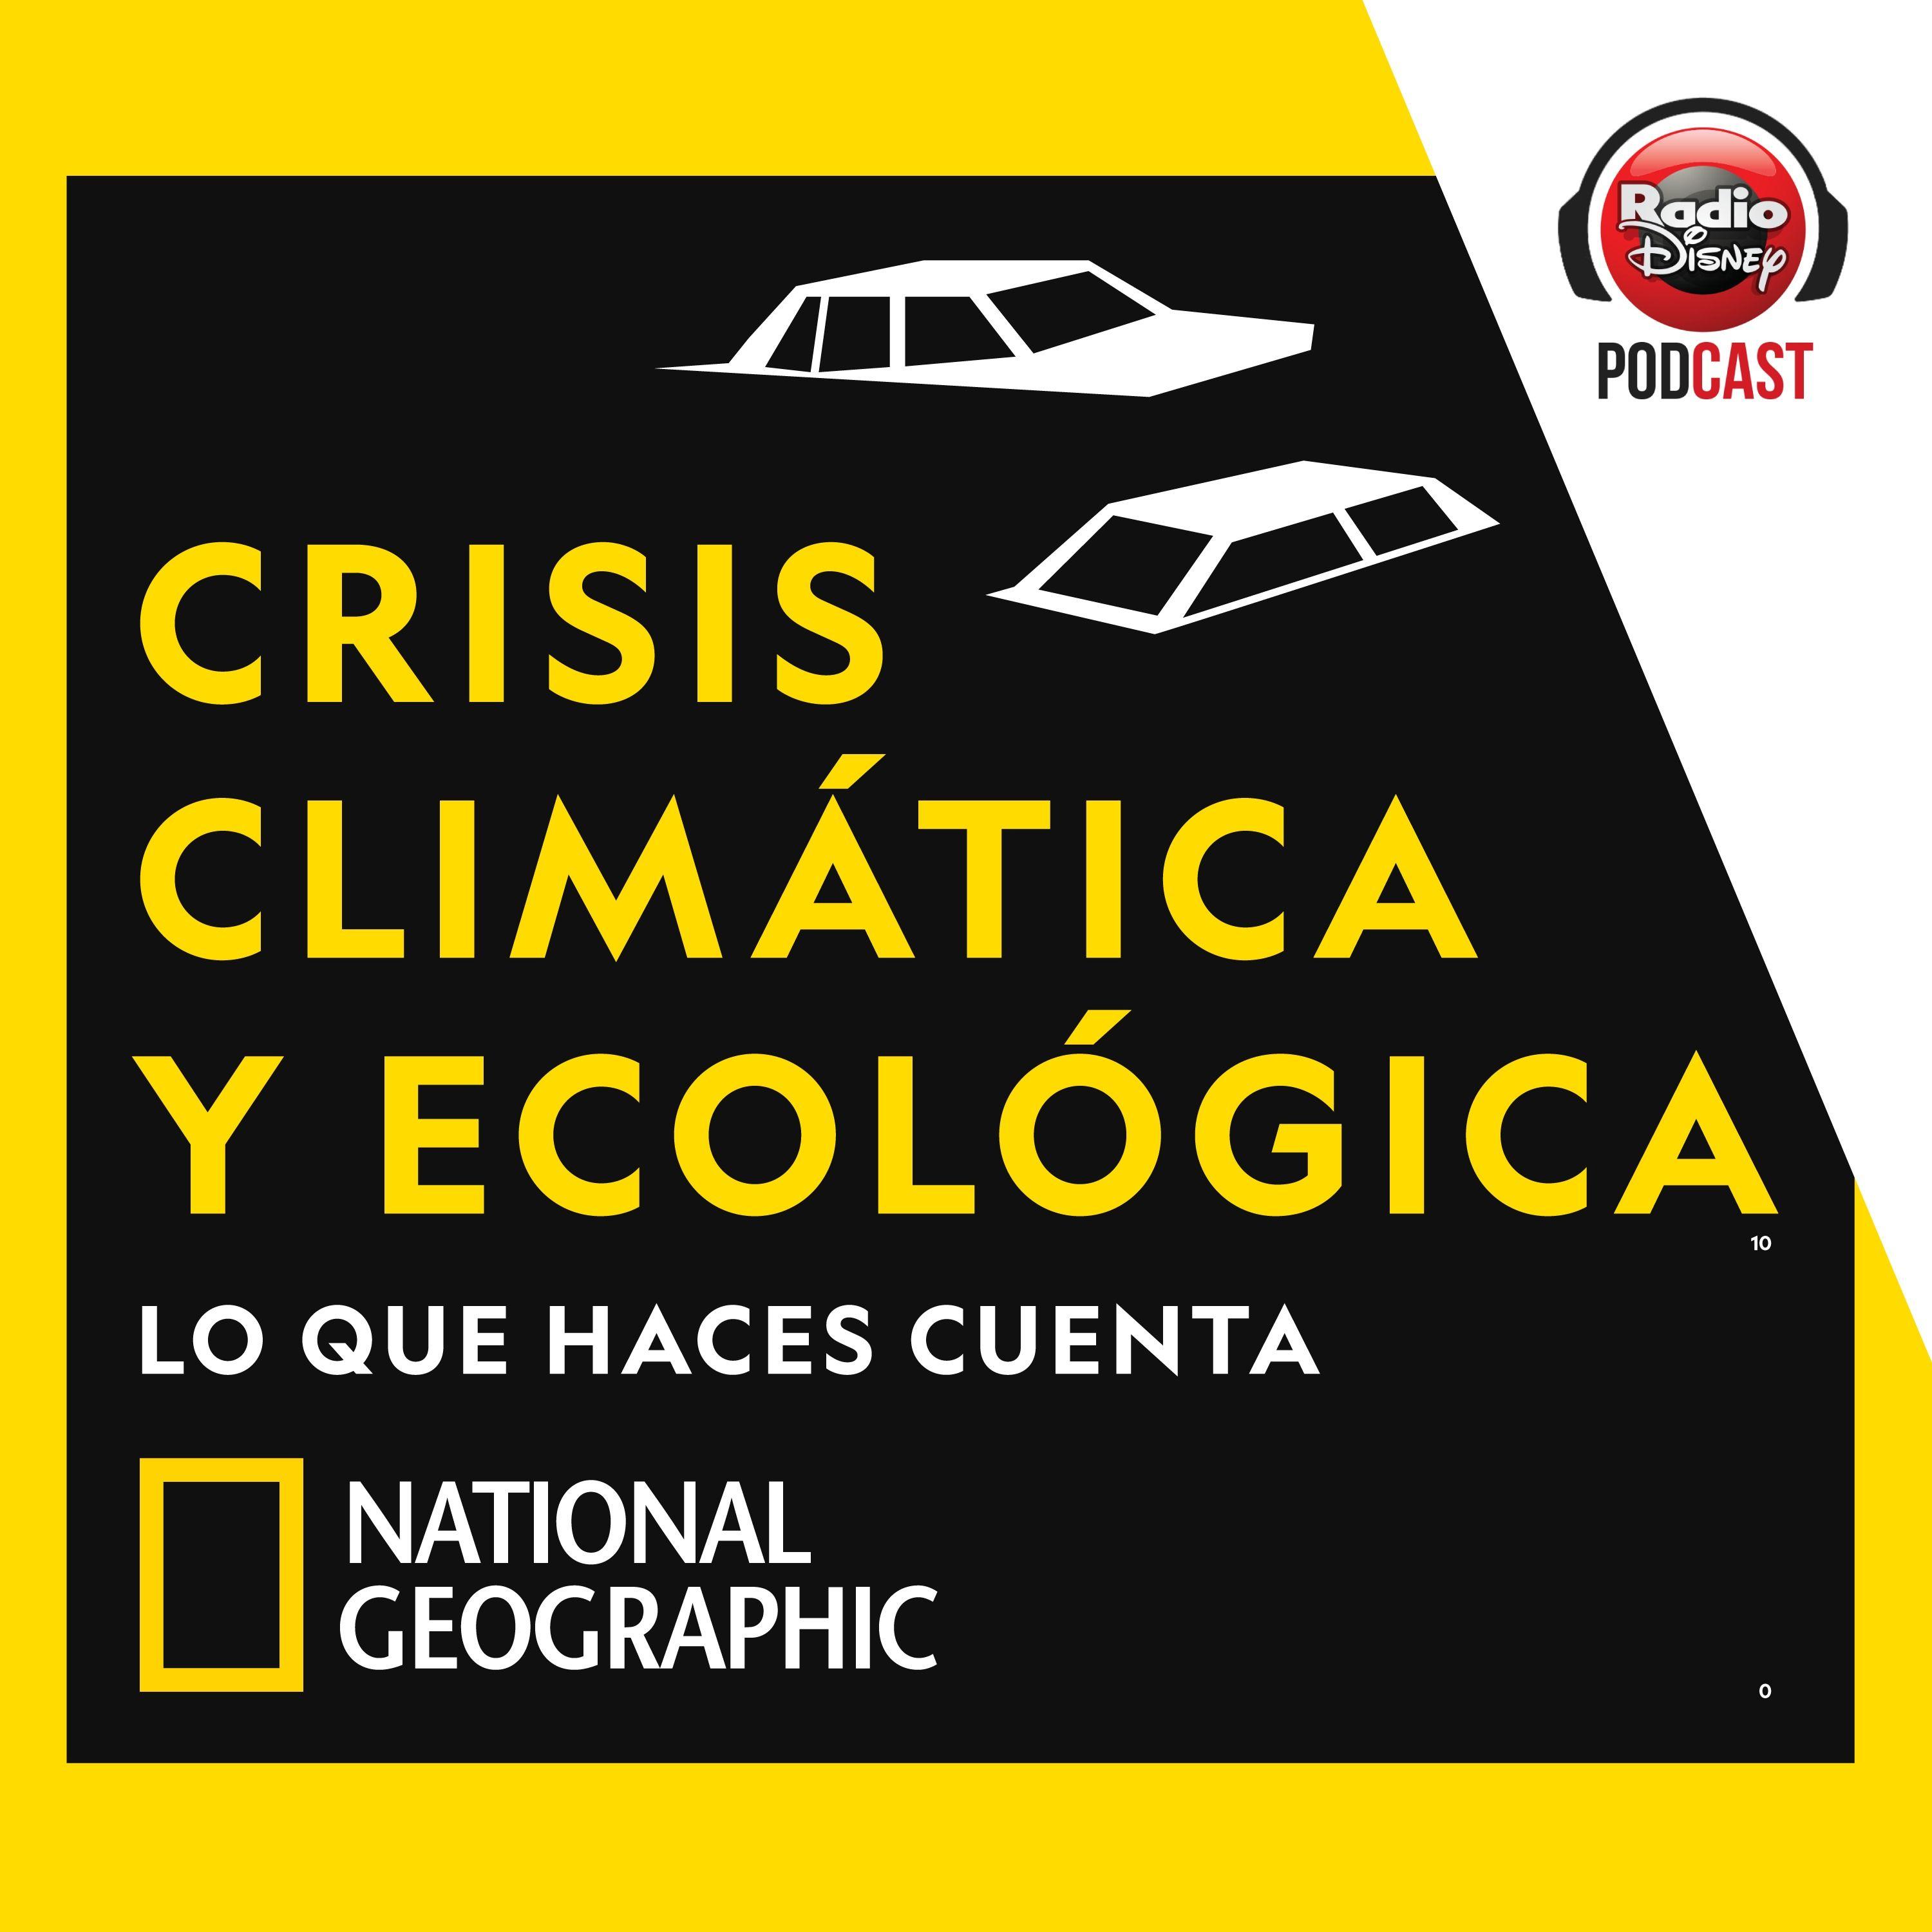 CRISIS CLIMÁTICA: El problemón ecológico